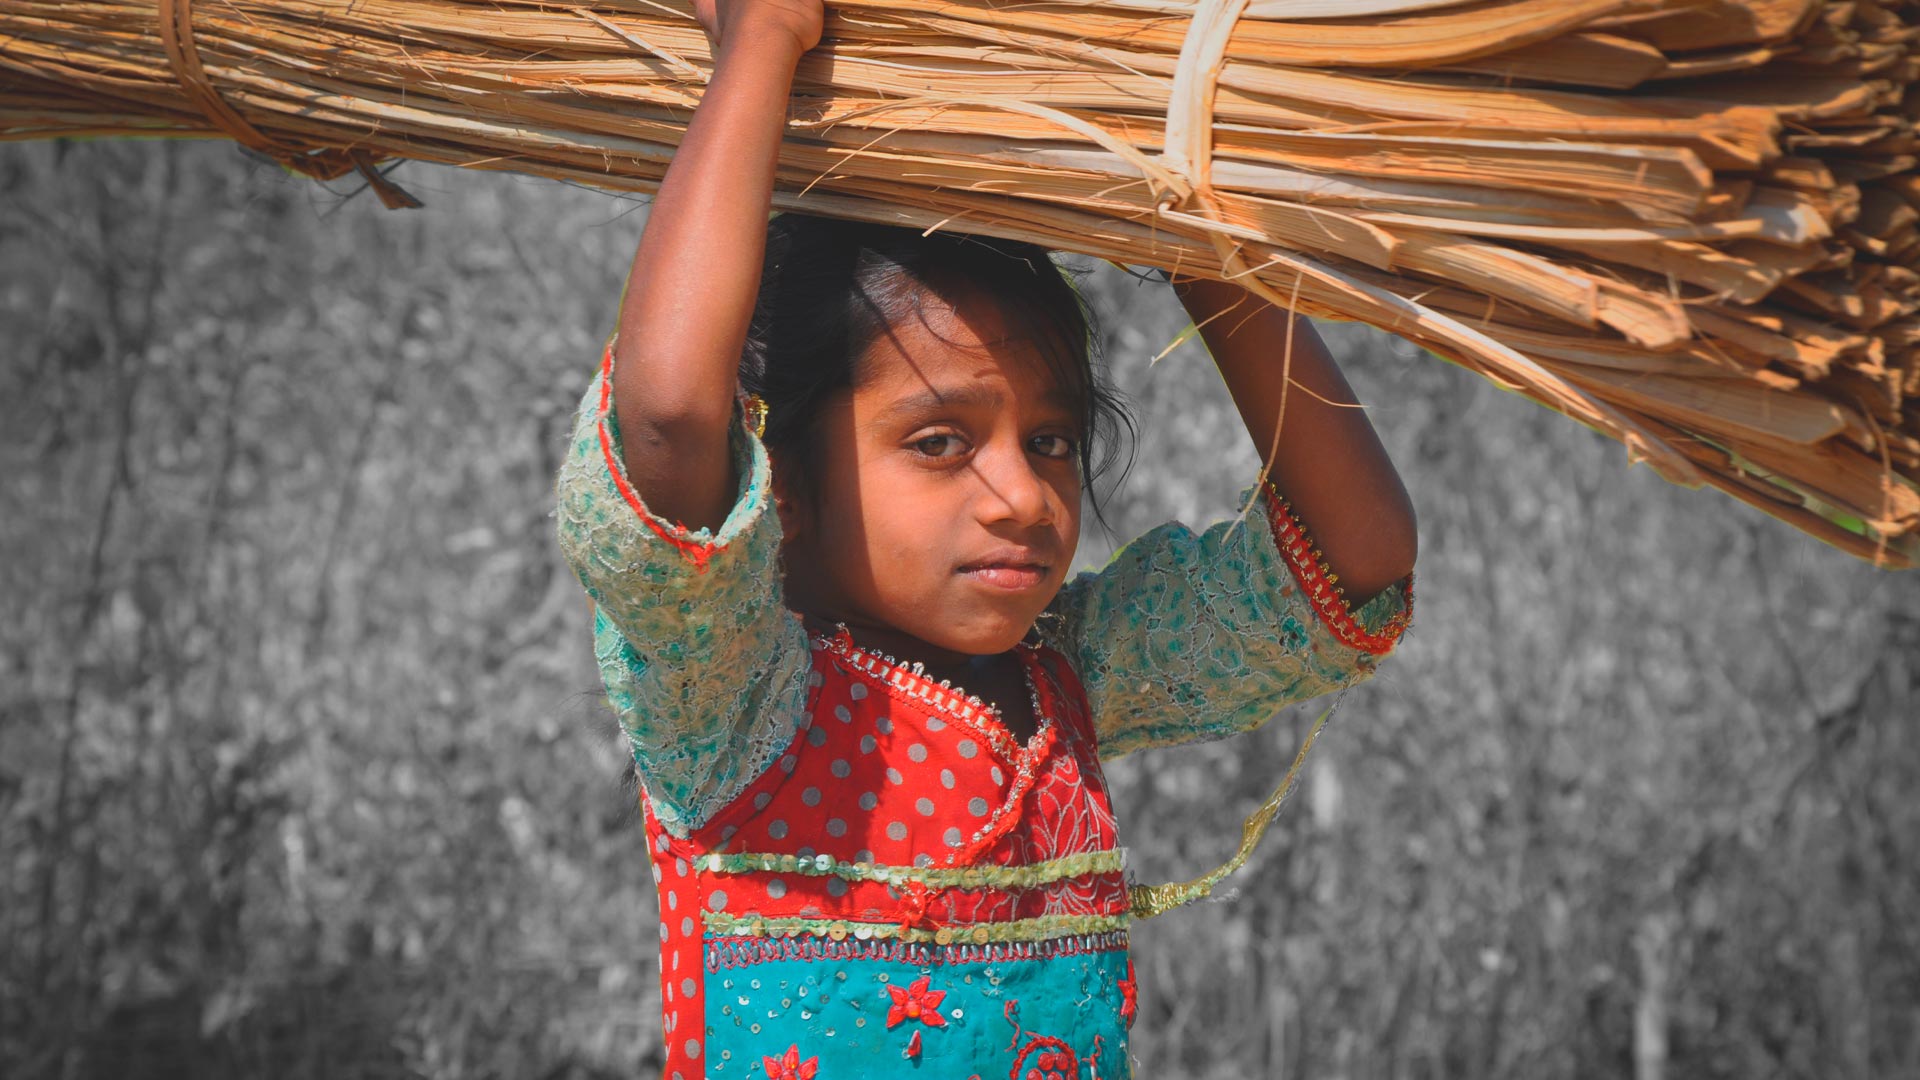 Trabalho infantil: Foto de uma menina com vestido colorido que carrega produtos acima da cabeça